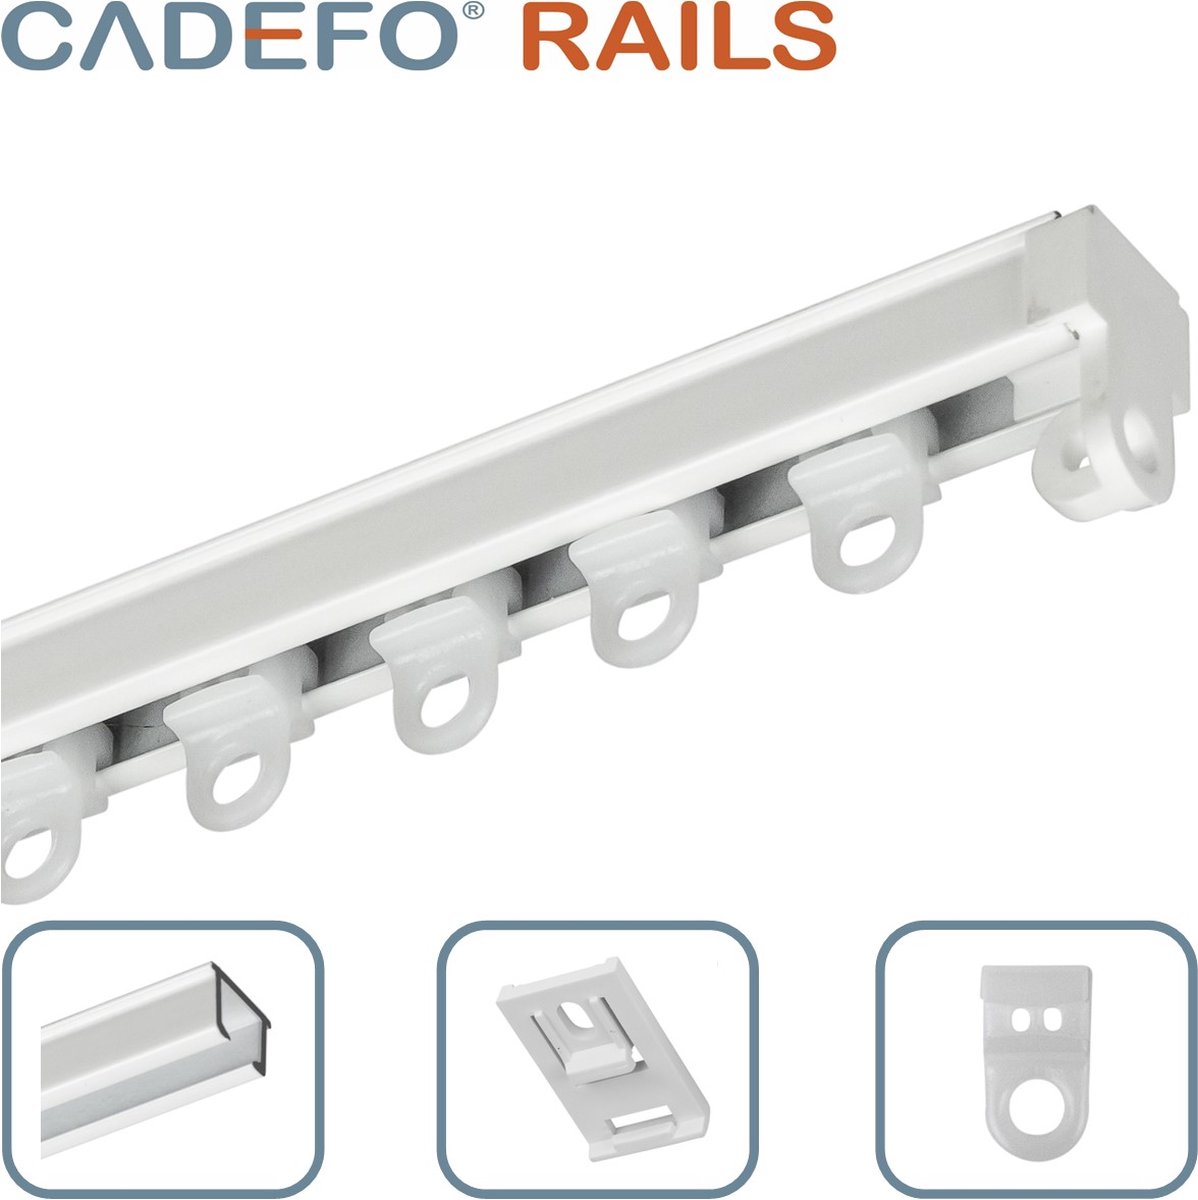 CADEFO RAILS (451 - 500 cm) Gordijnrails - Compleet op maat! - UIT 1 STUK - Leverbaar tot 6 meter - Plafondbevestiging - Lengte 485 cm